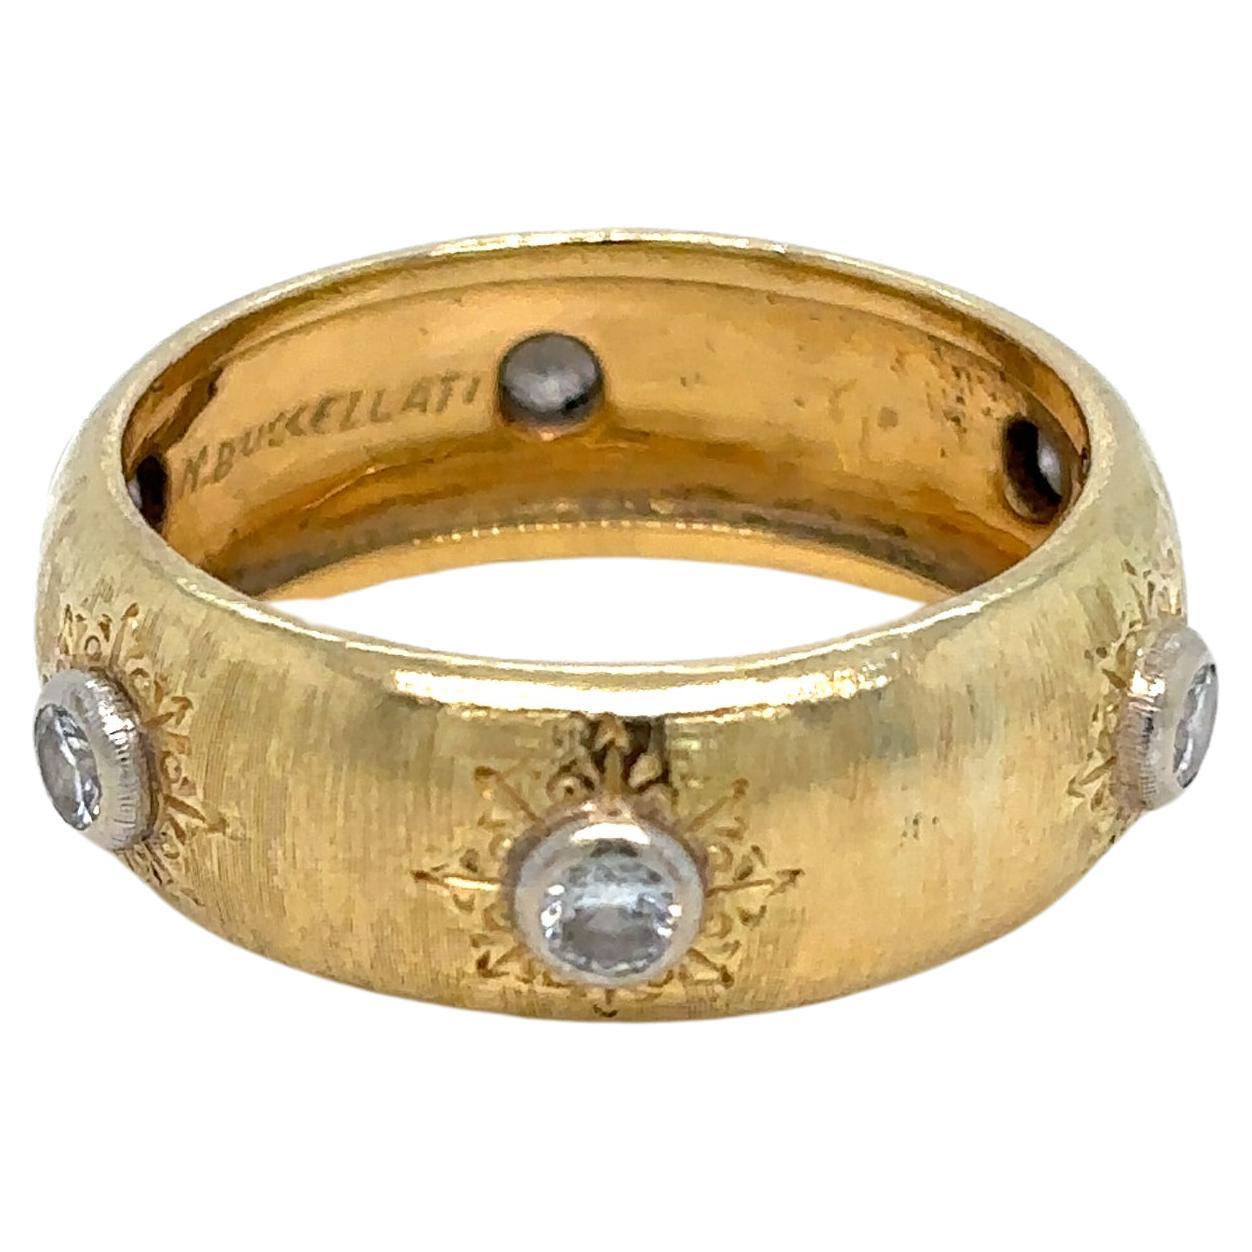 Ikonischer Buccellati-Ring aus Gelb- und Weißgold, besetzt mit 0,30 Karat farblosen Diamanten. Hergestellt in den 1960er Jahren 

Der Rigato-Effekt, der durch die handgefertigte Gravur erzielt wird, erreicht seinen Höhepunkt in der Collection'S. Die